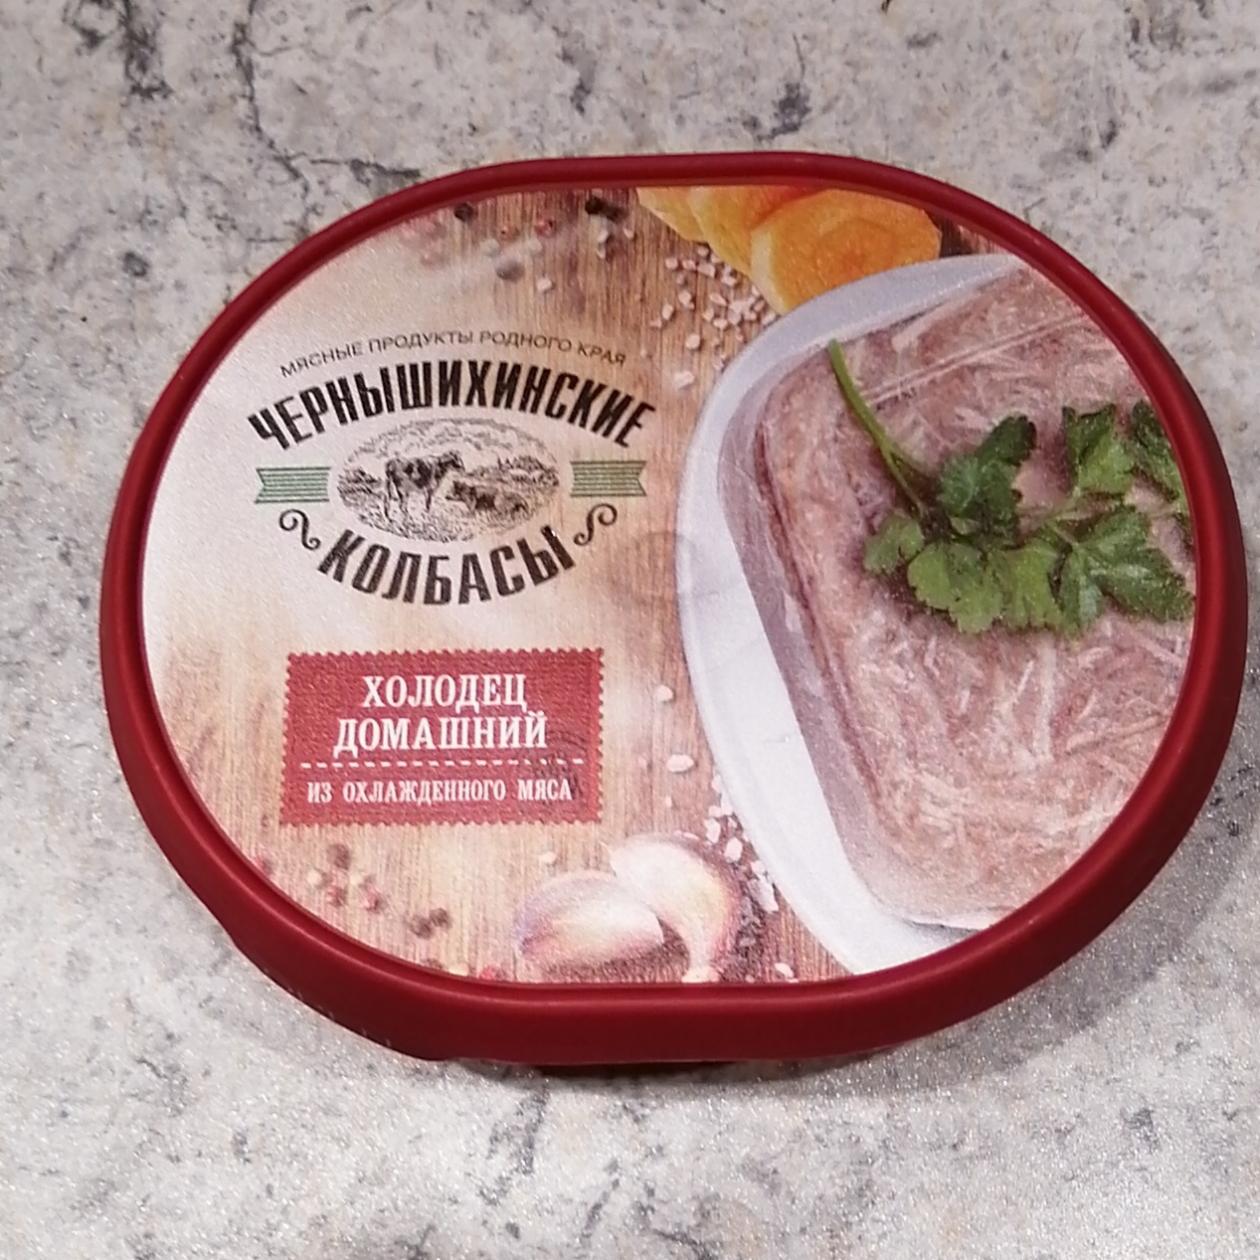 Фото - Холодец домашний из охлажденного мяса Чернышихинские колбасы